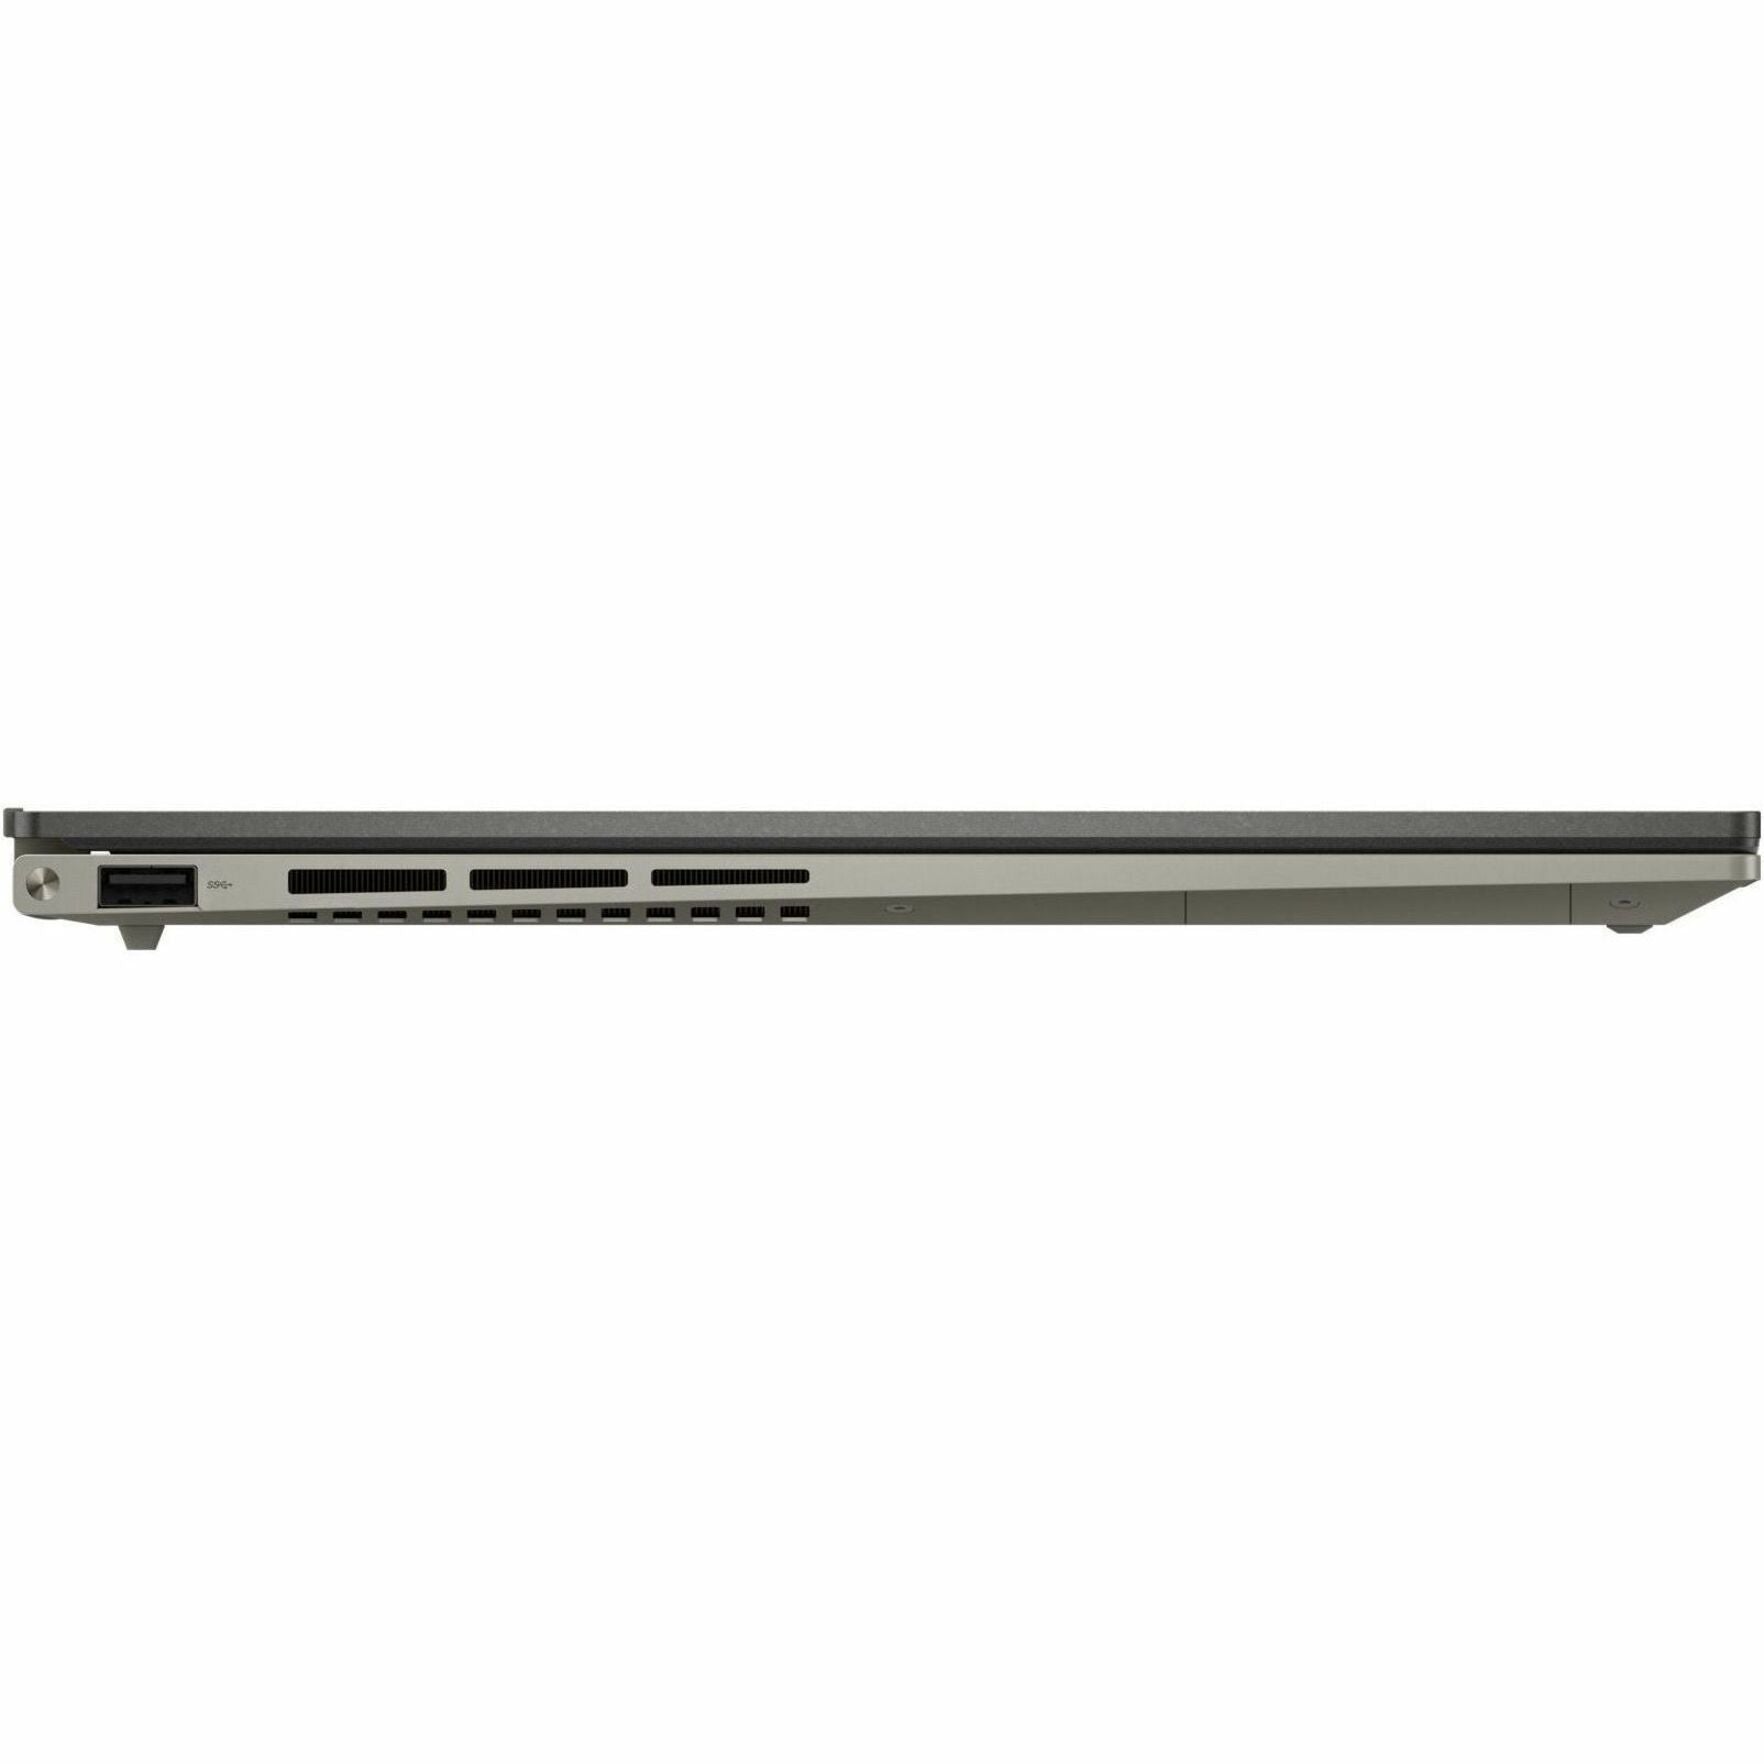 Asus UM3504DA-DS76 Zenbook 15 OLED Notebook, 2.8K, Ryzen 7, 32GB RAM, 1TB SSD, Basalt Gray